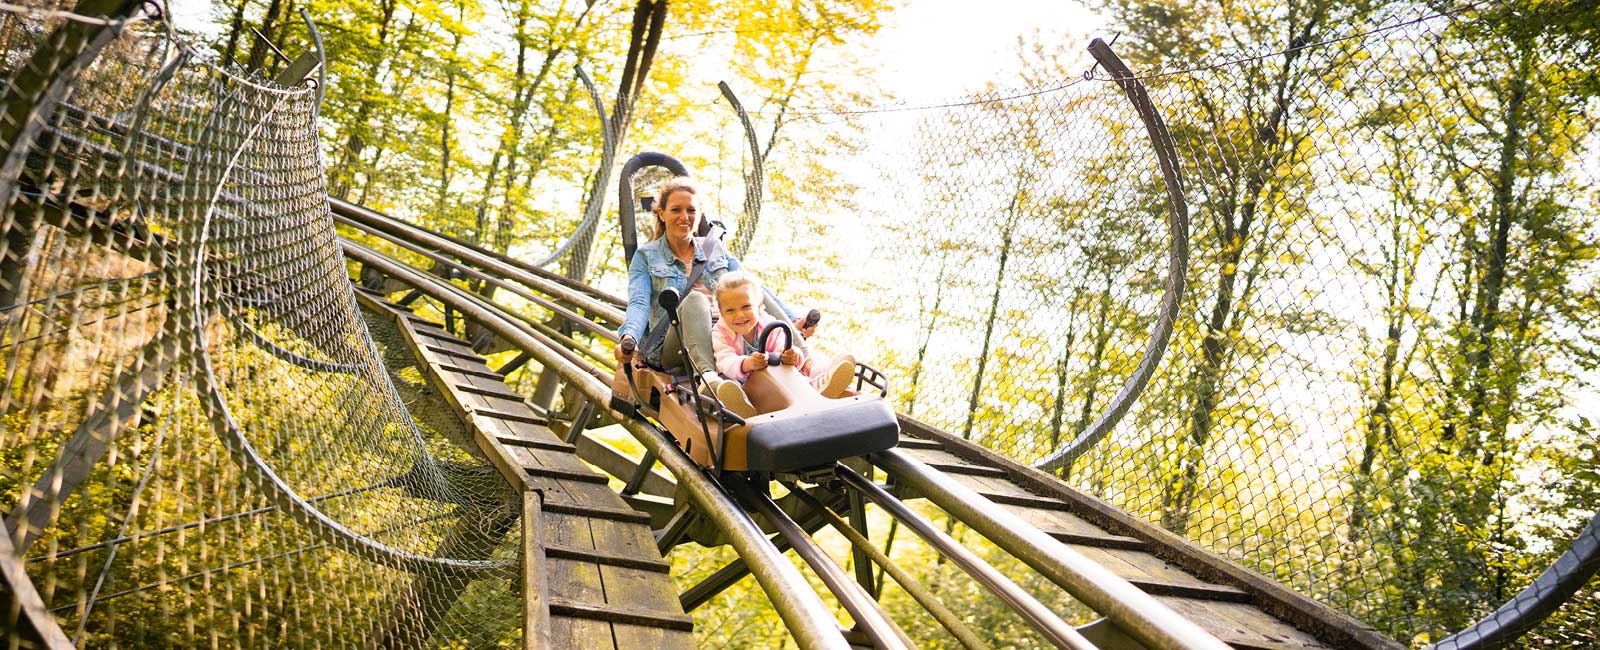 In der 1,3 km langen Sommerrodelbahn in einem Freizeitpark erleben die Gäste Action und Fun.